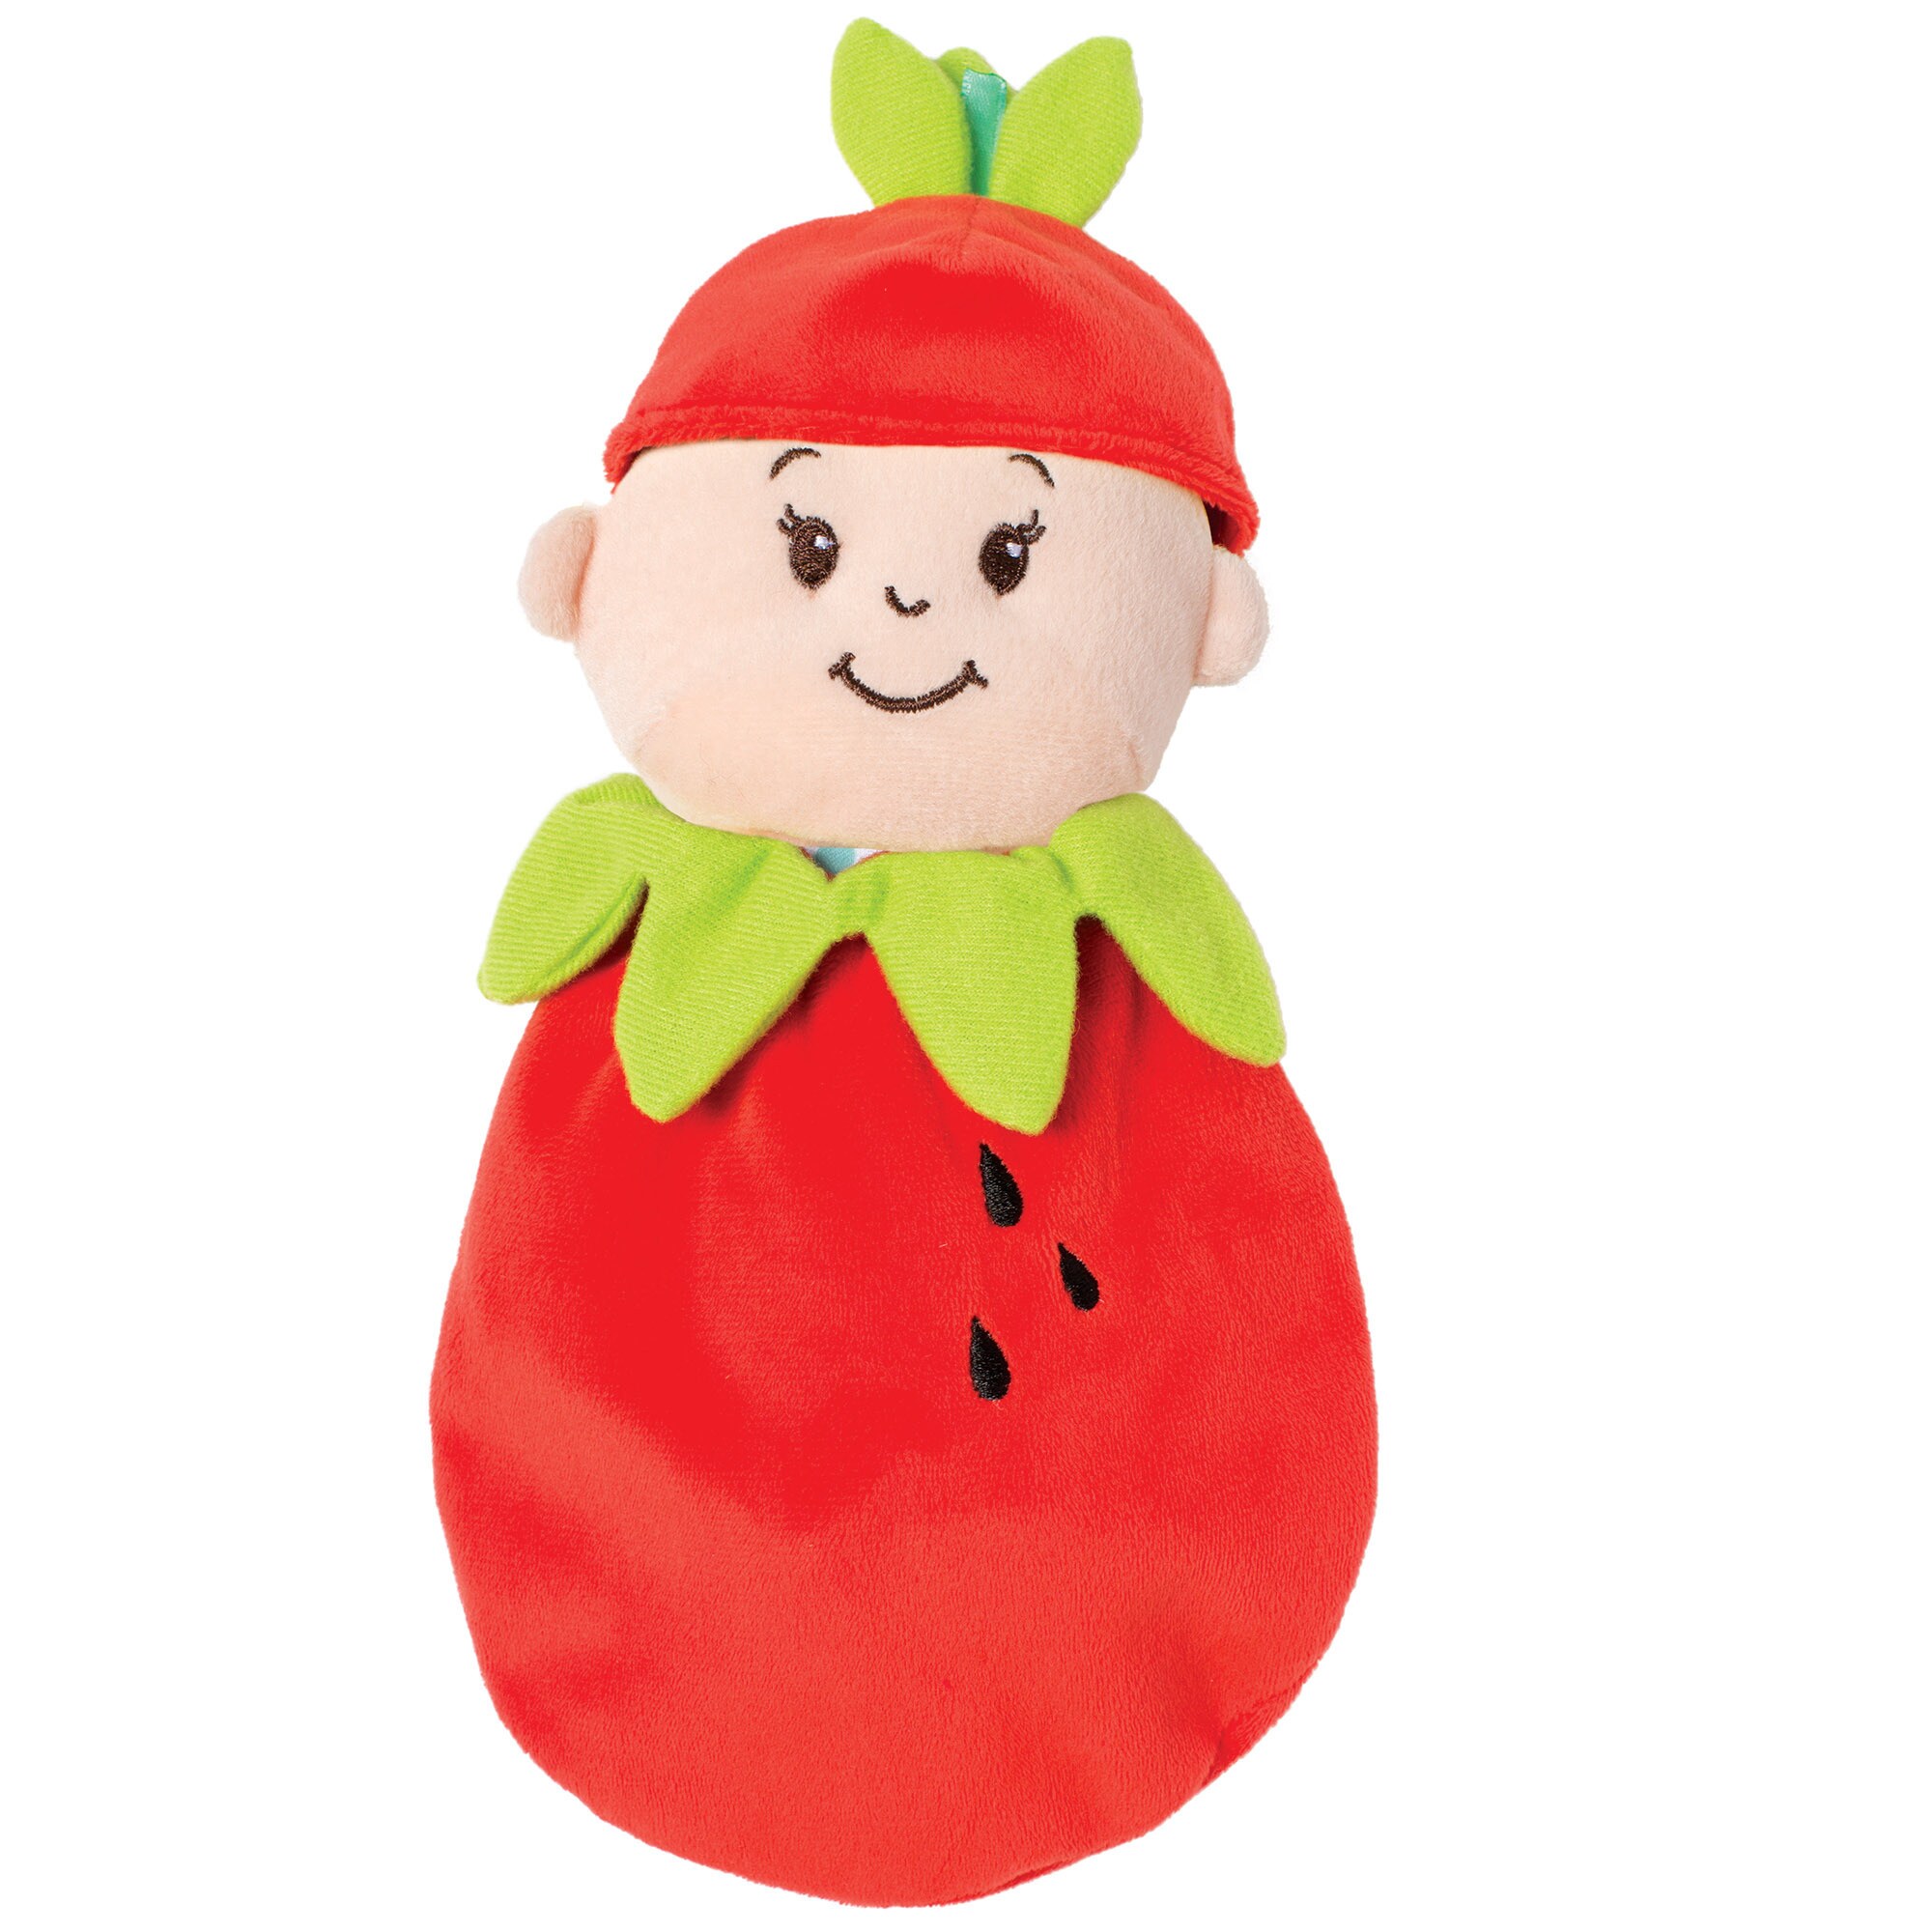 strawberry head doll